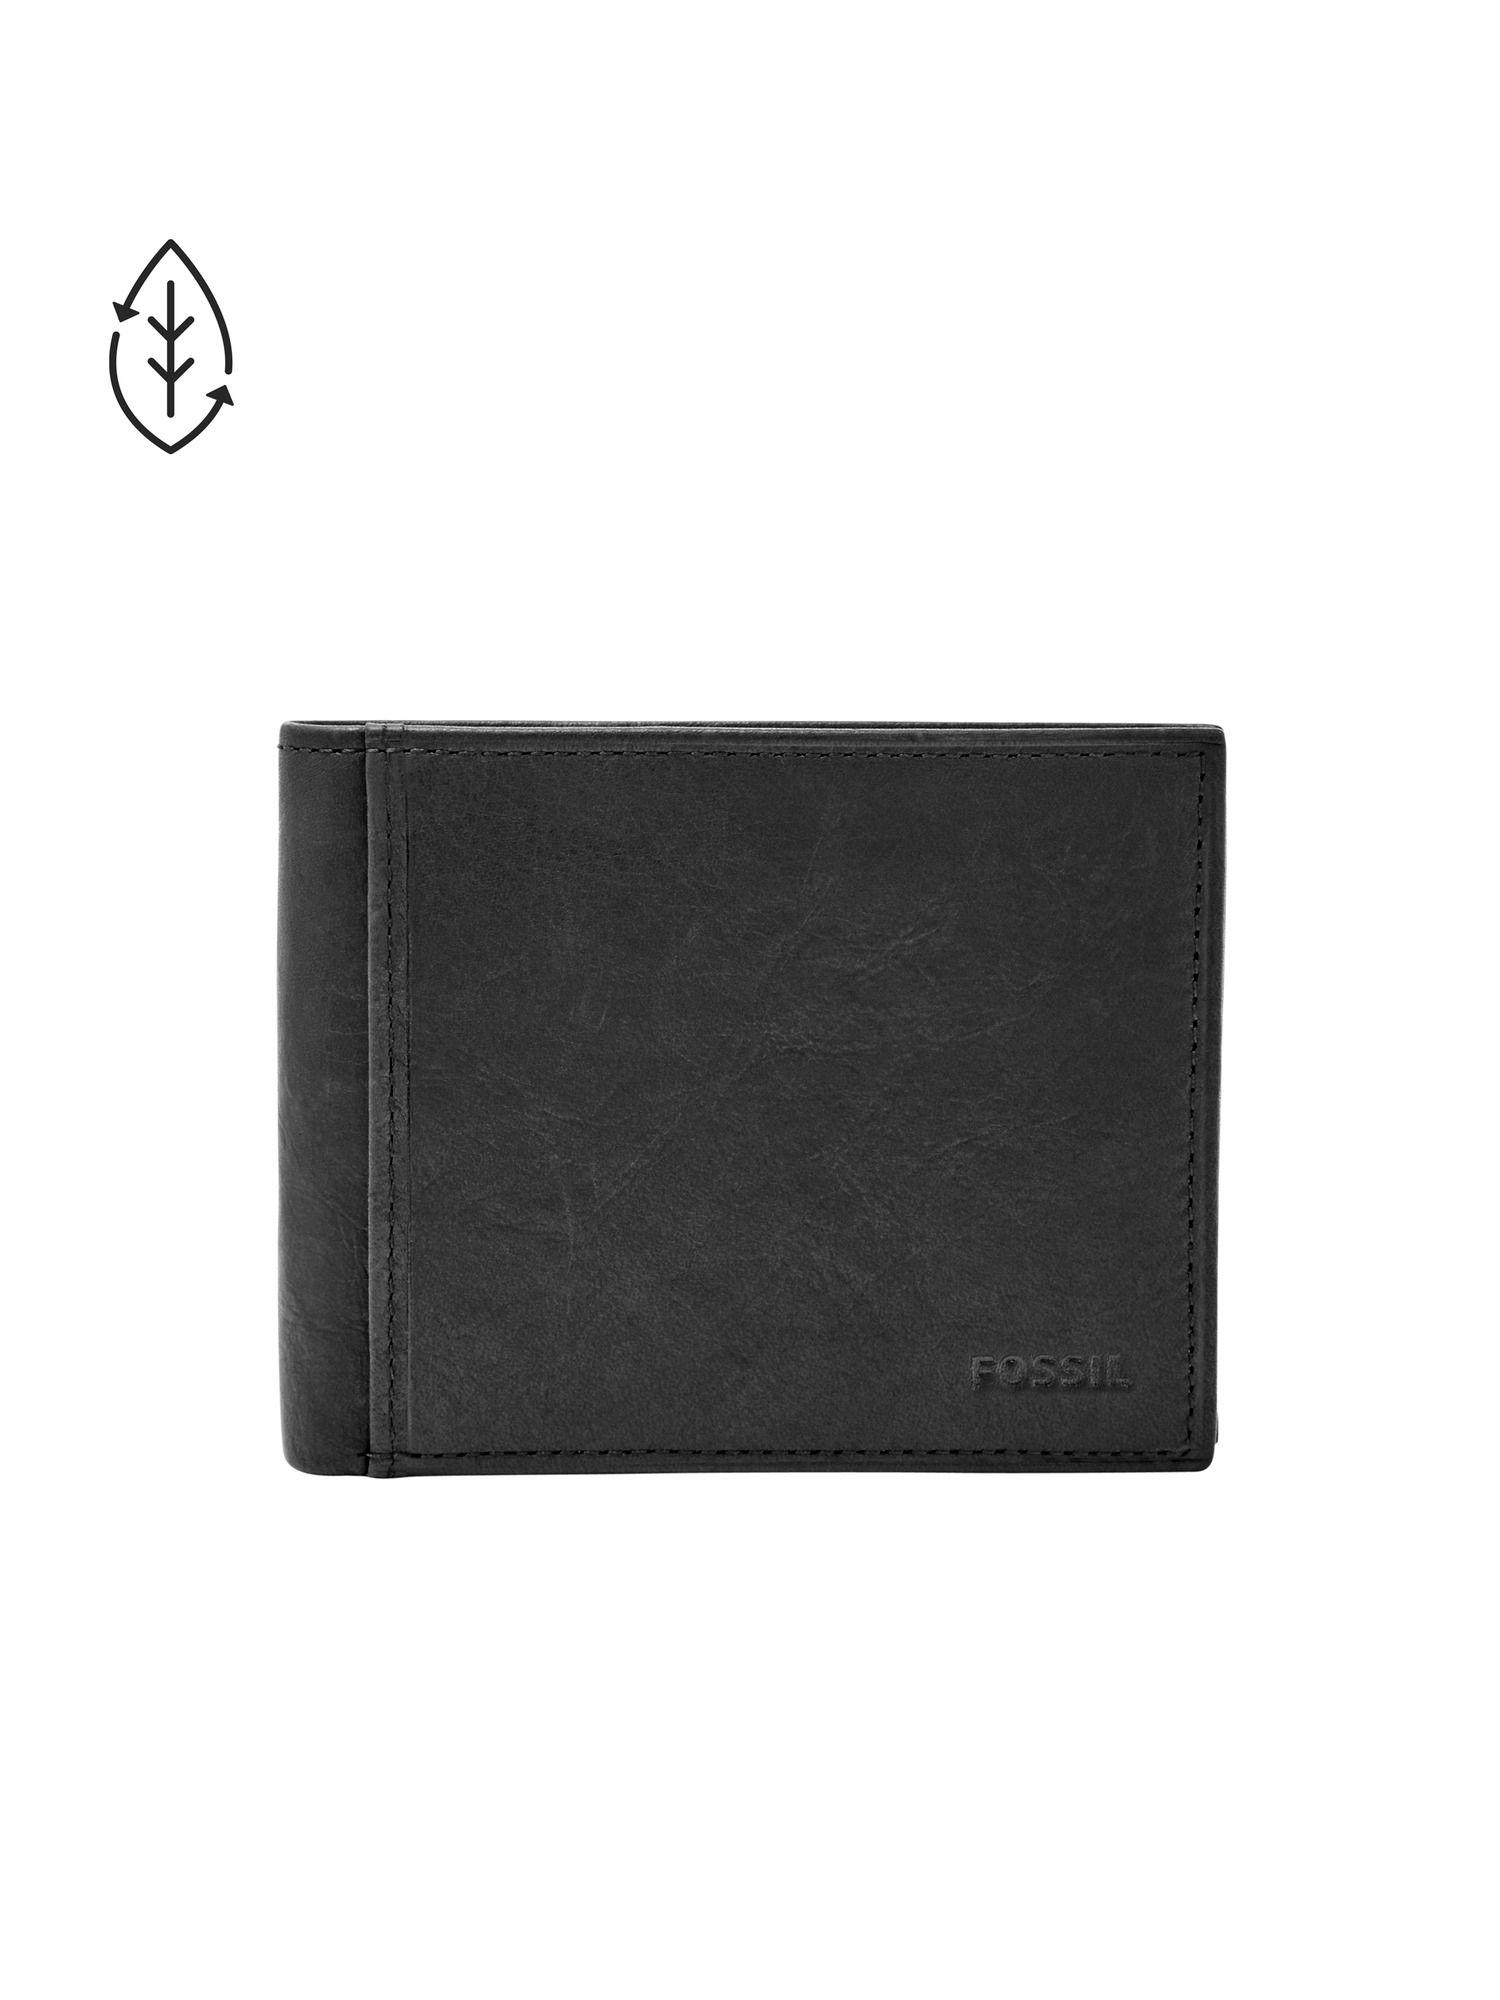 ingram black wallet ml3784001